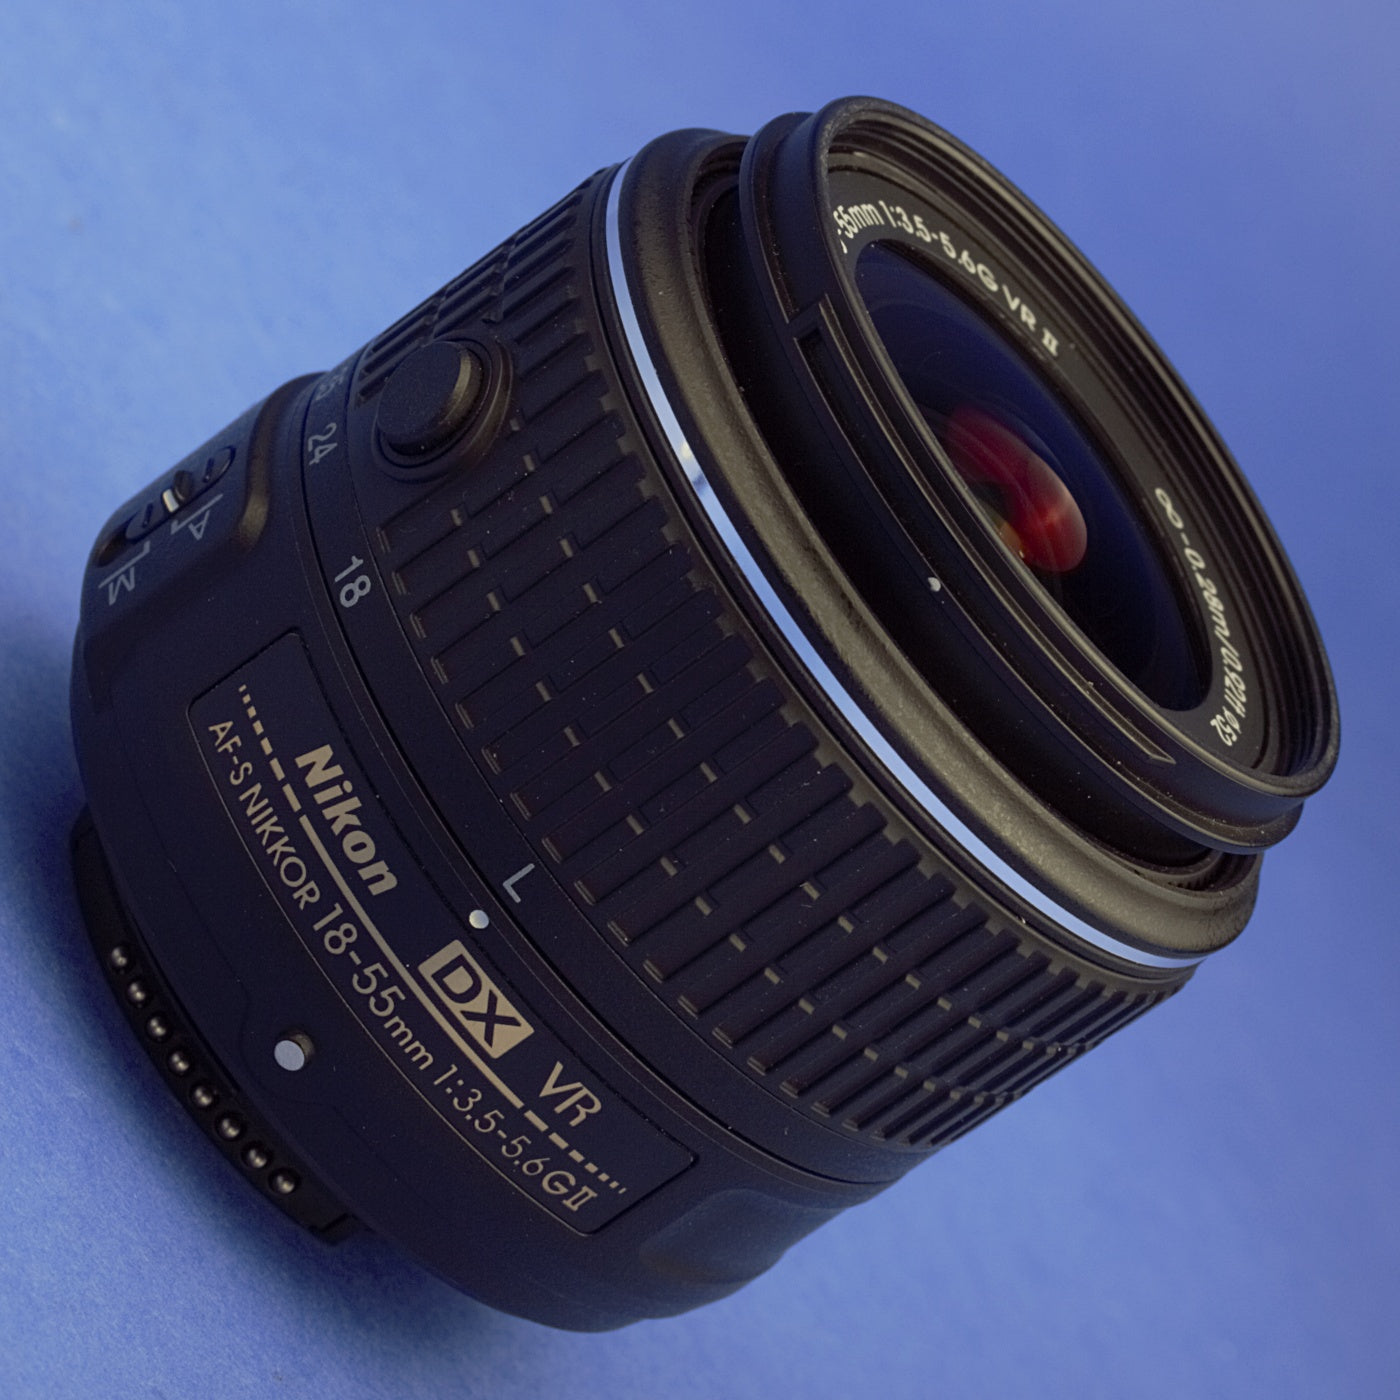 Nikon AF-S 18-55mm 3.5-5.6G VR II Lens Mint Condition